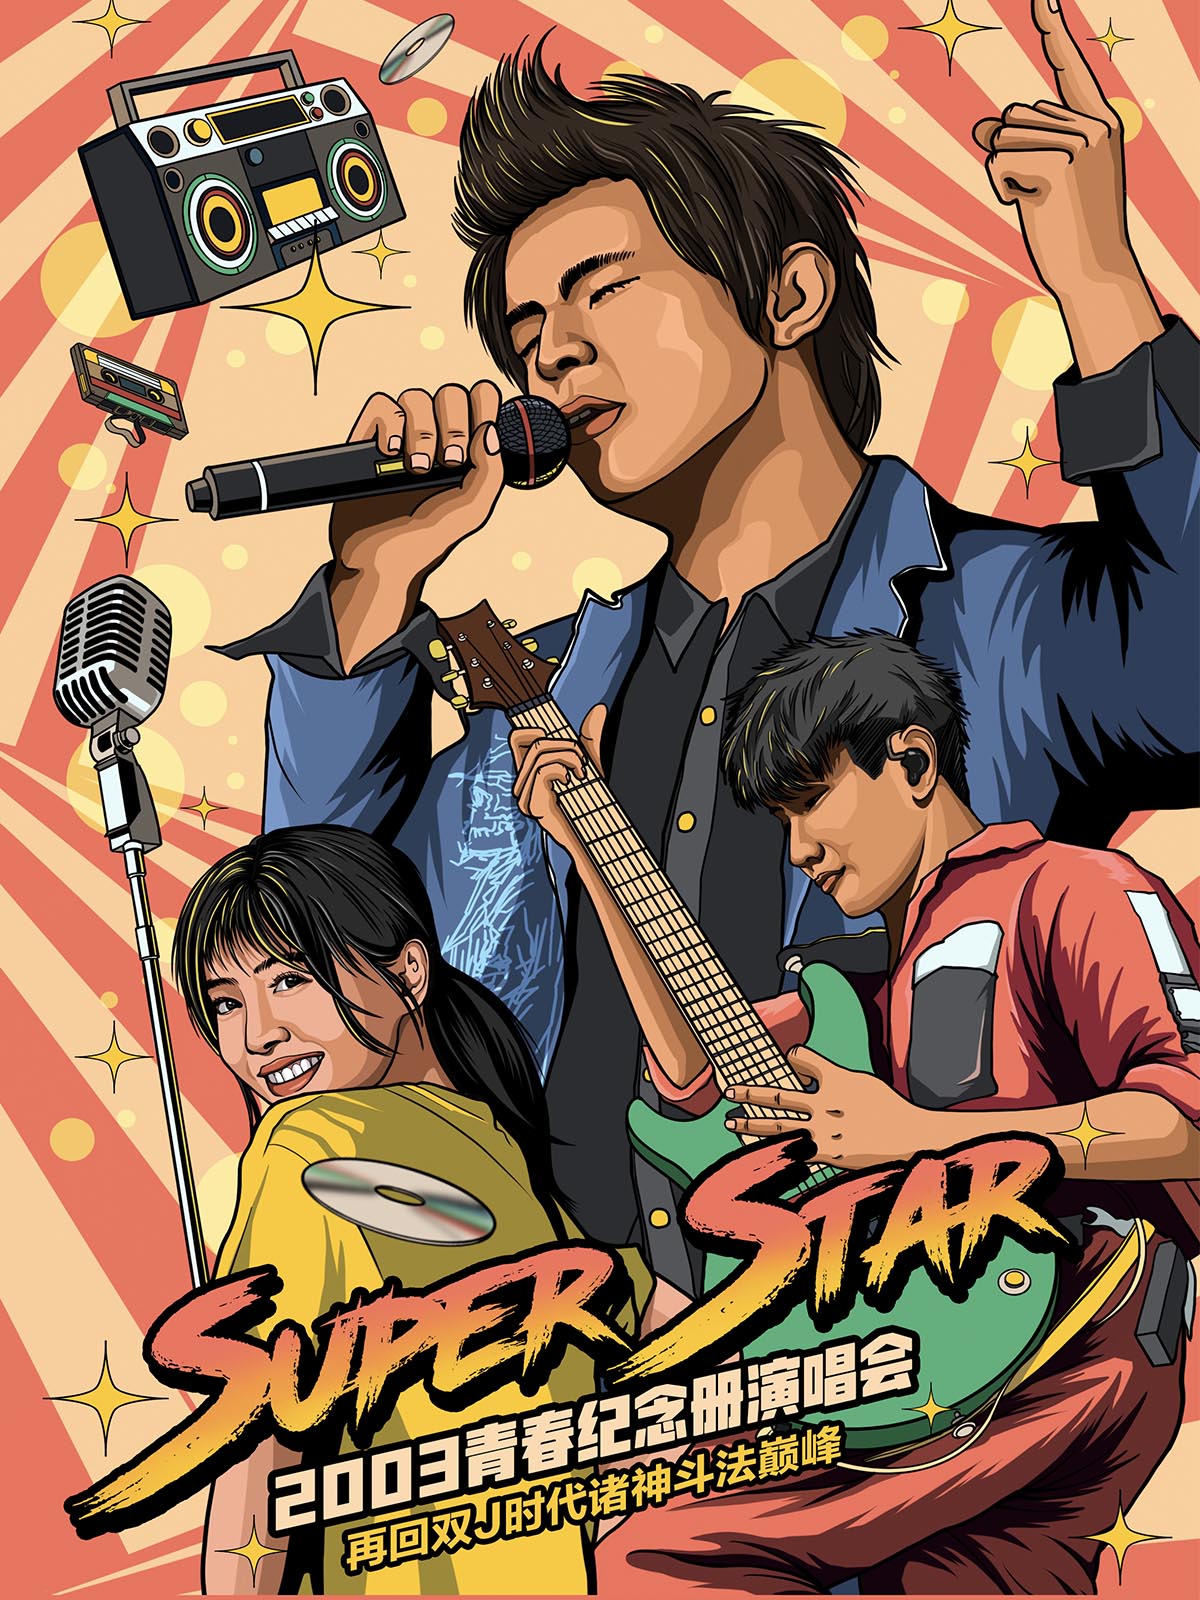 【深圳】Super Star 2003青春纪念册演唱会—再回双J时代诸神斗法巅峰